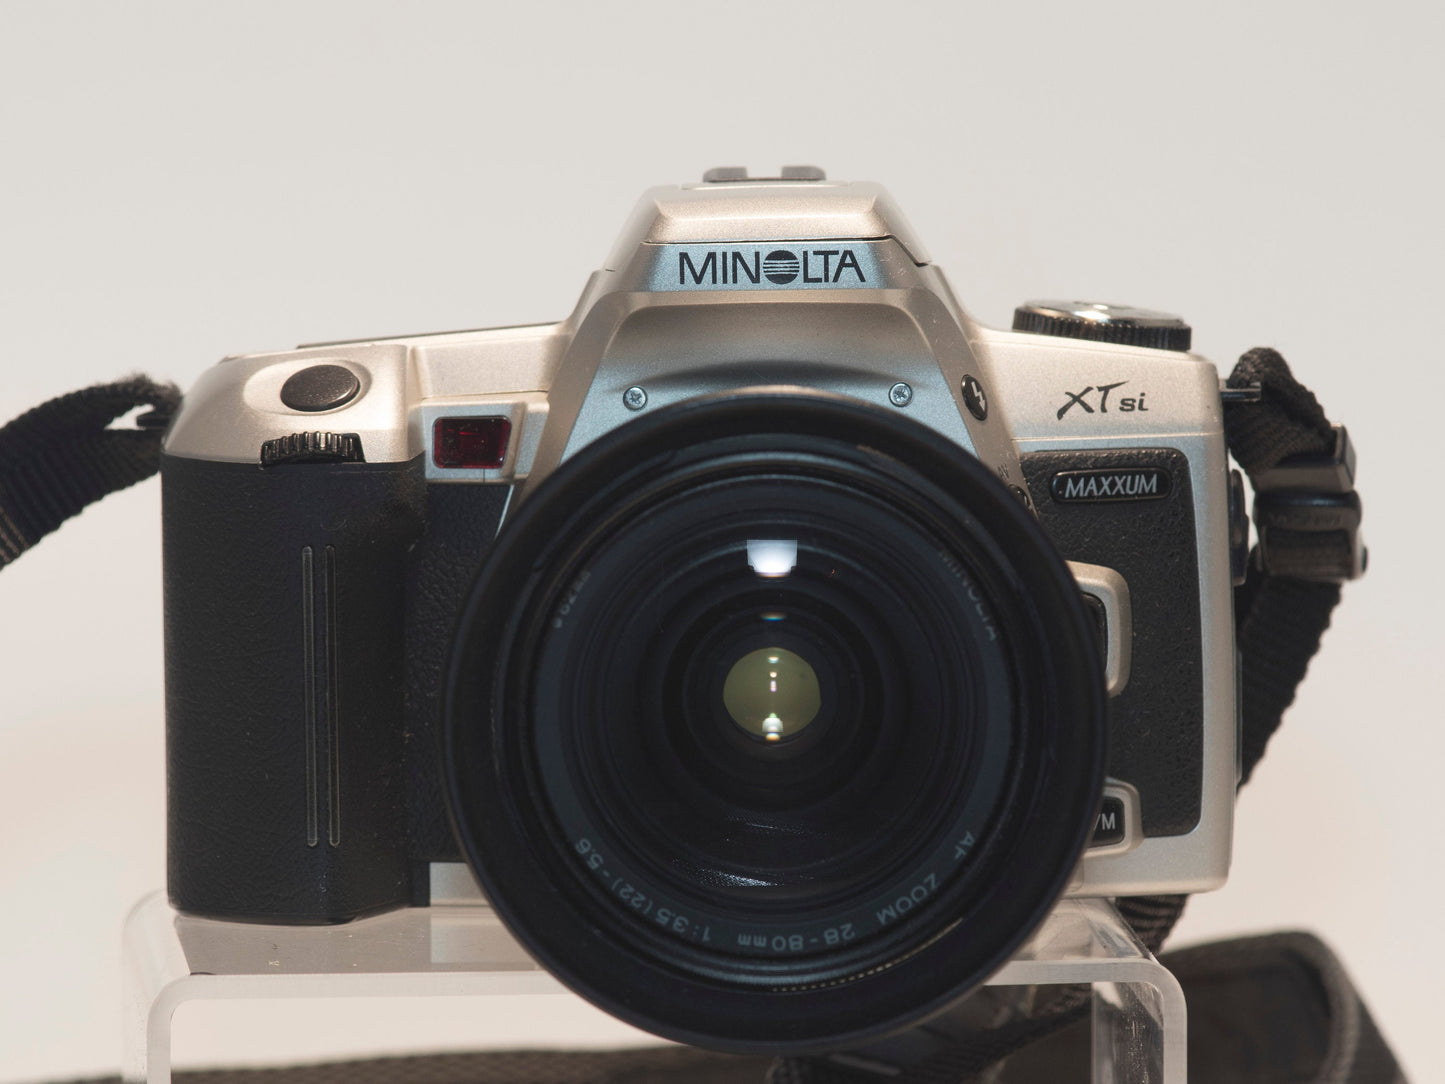 Reflex Minolta Maxxum XTsi 35 mm